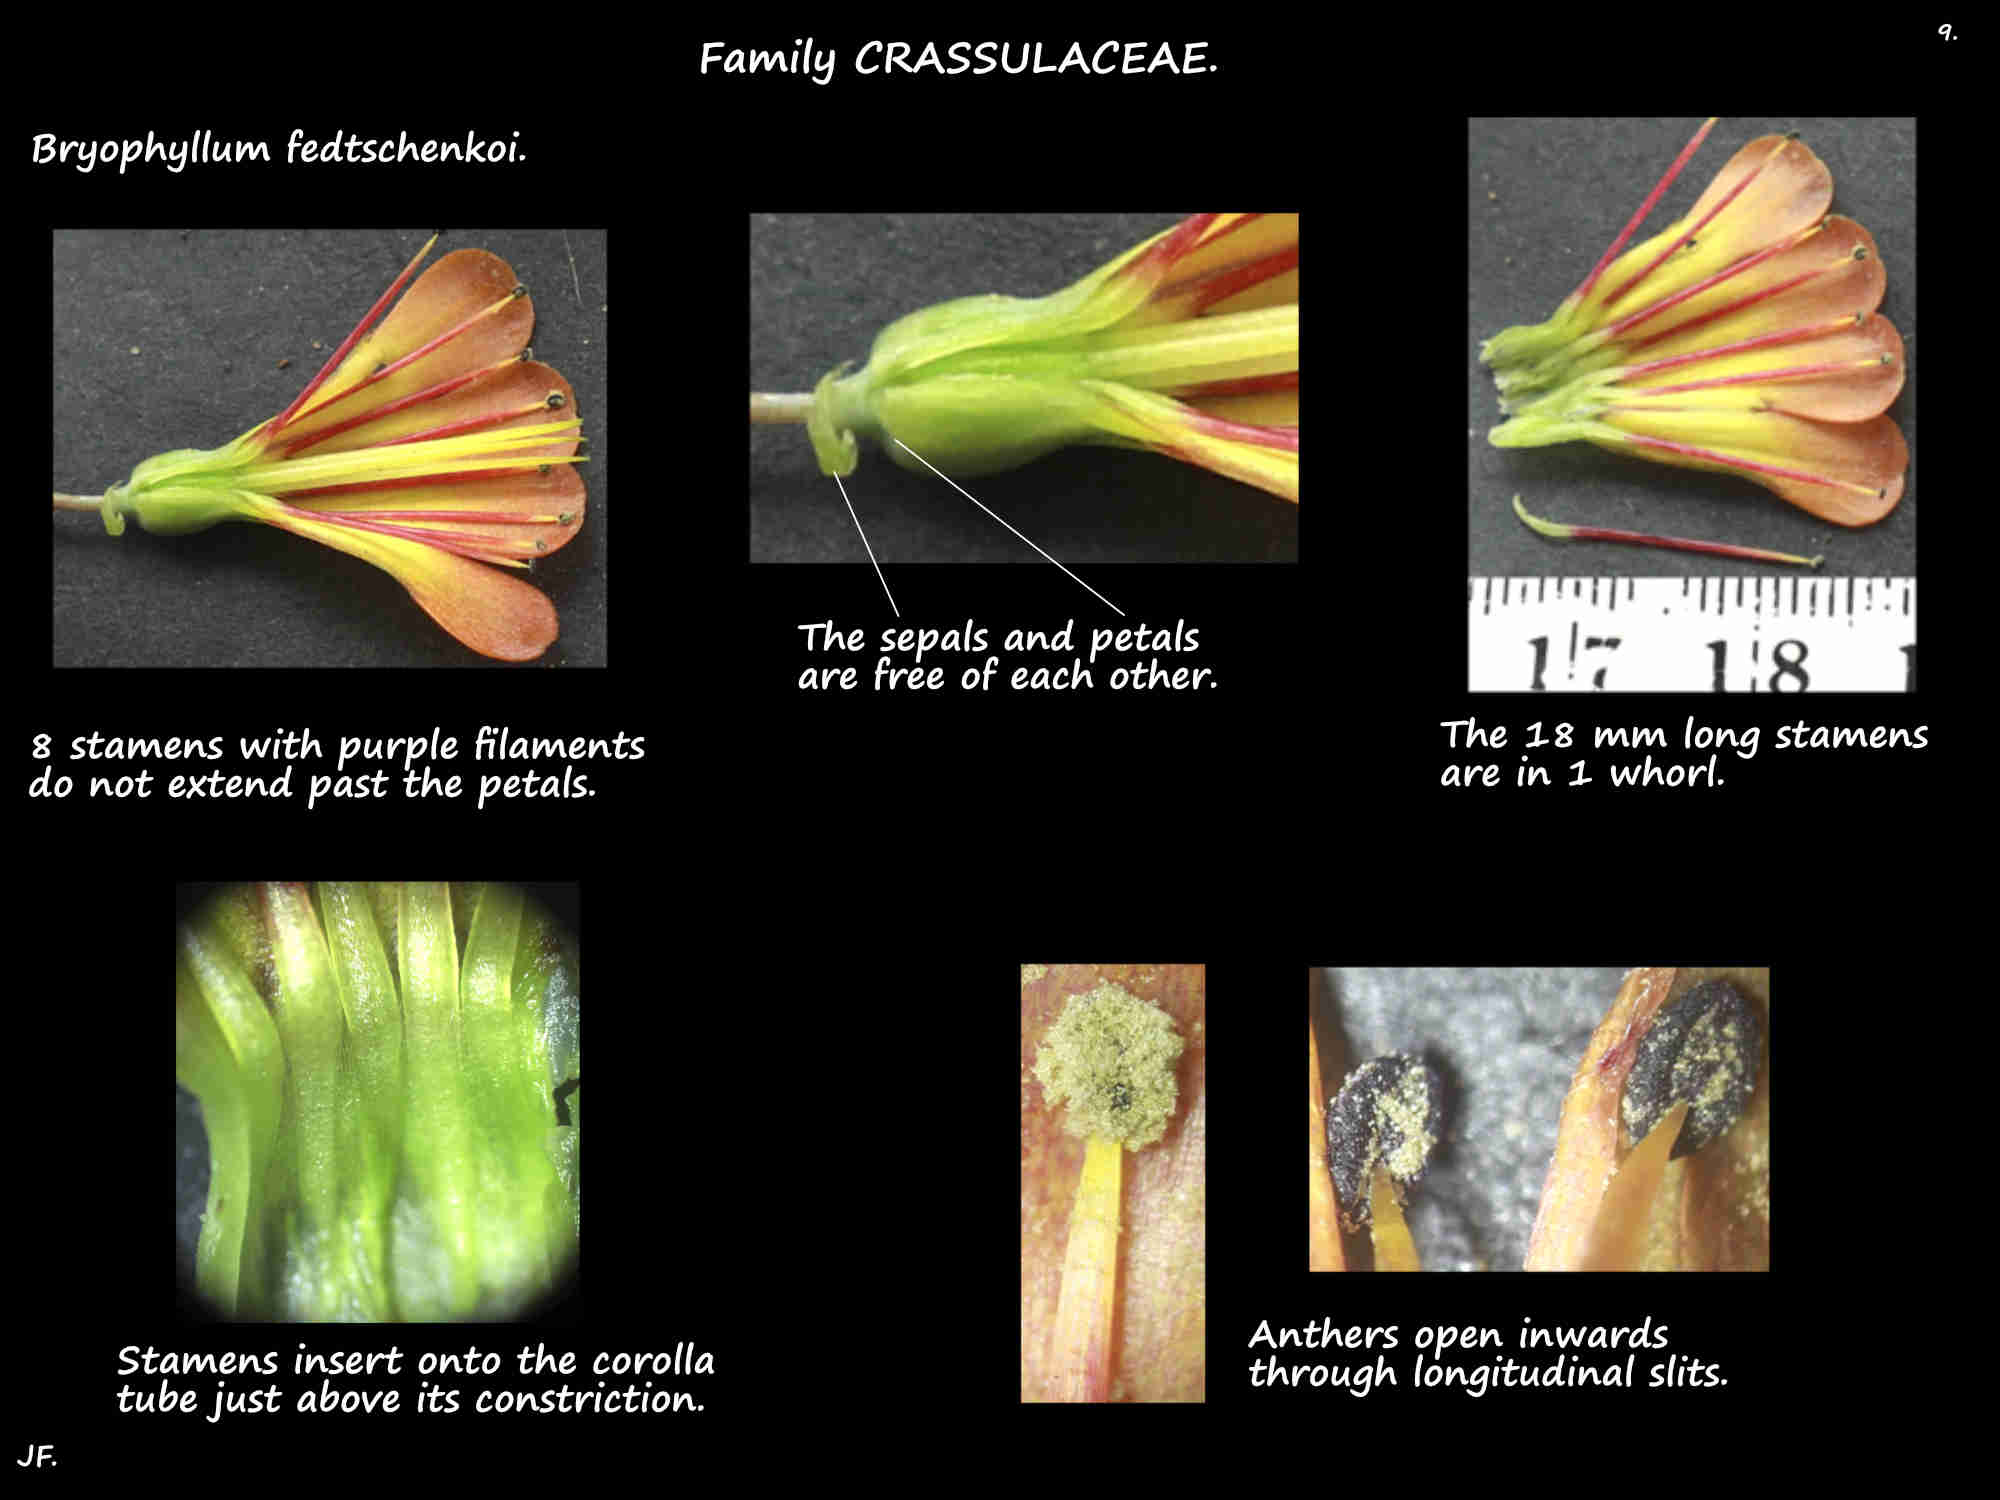 9 Bryophyllum fedtschenkoi stamens